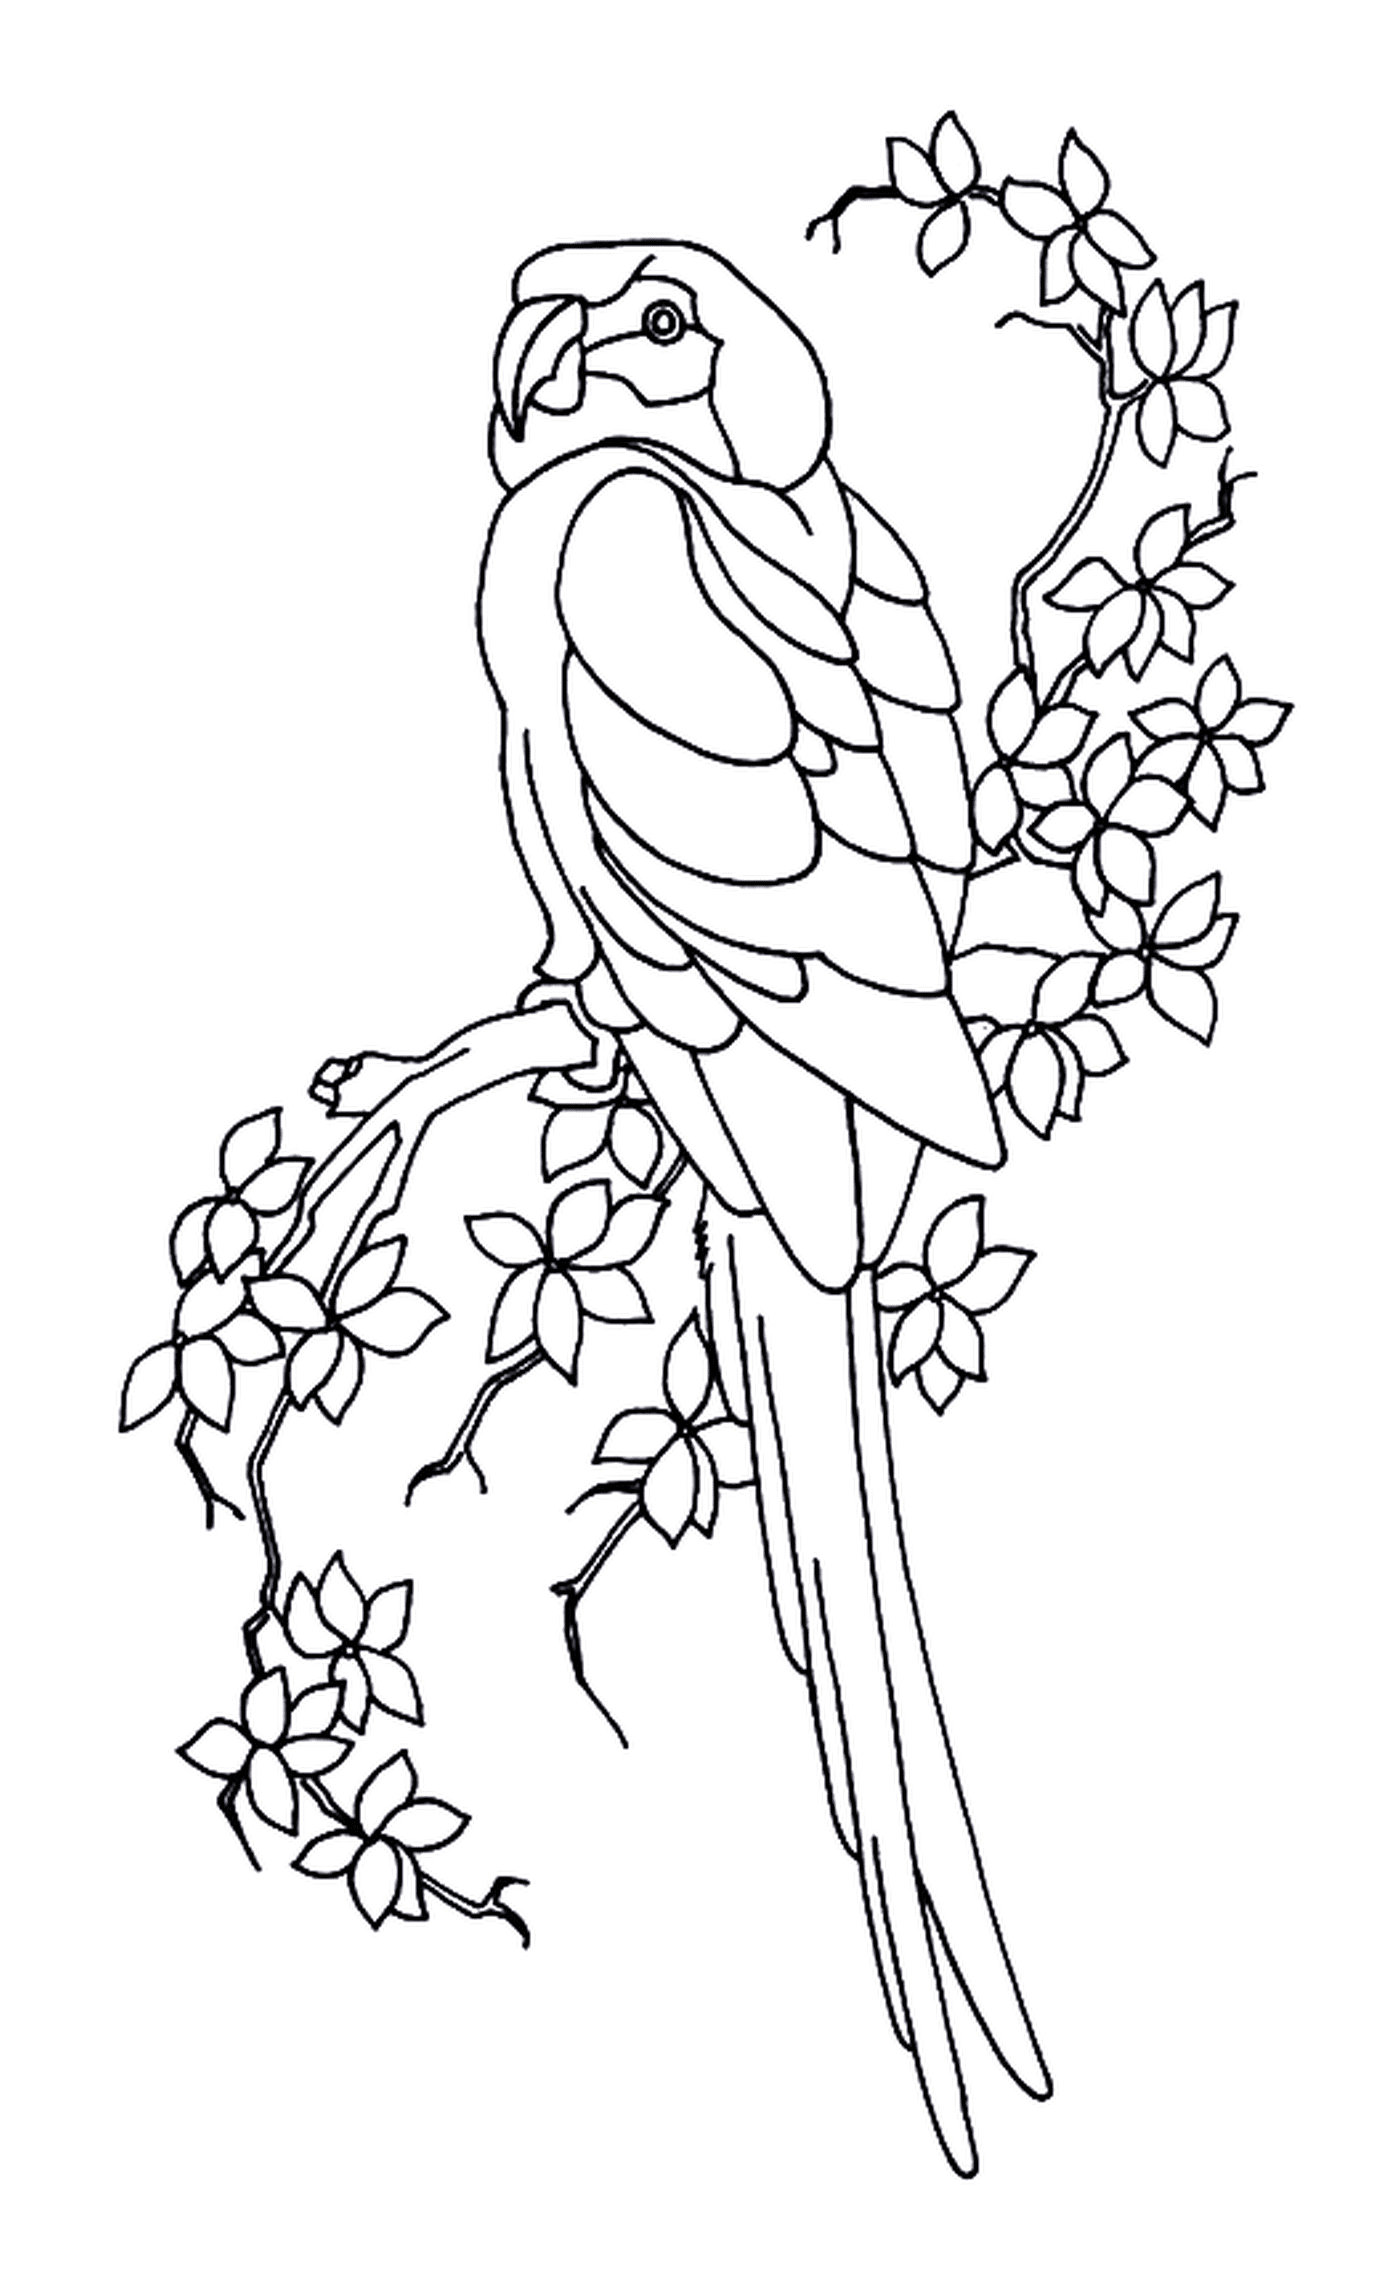  Перро и листья, птица на ветке дерева 